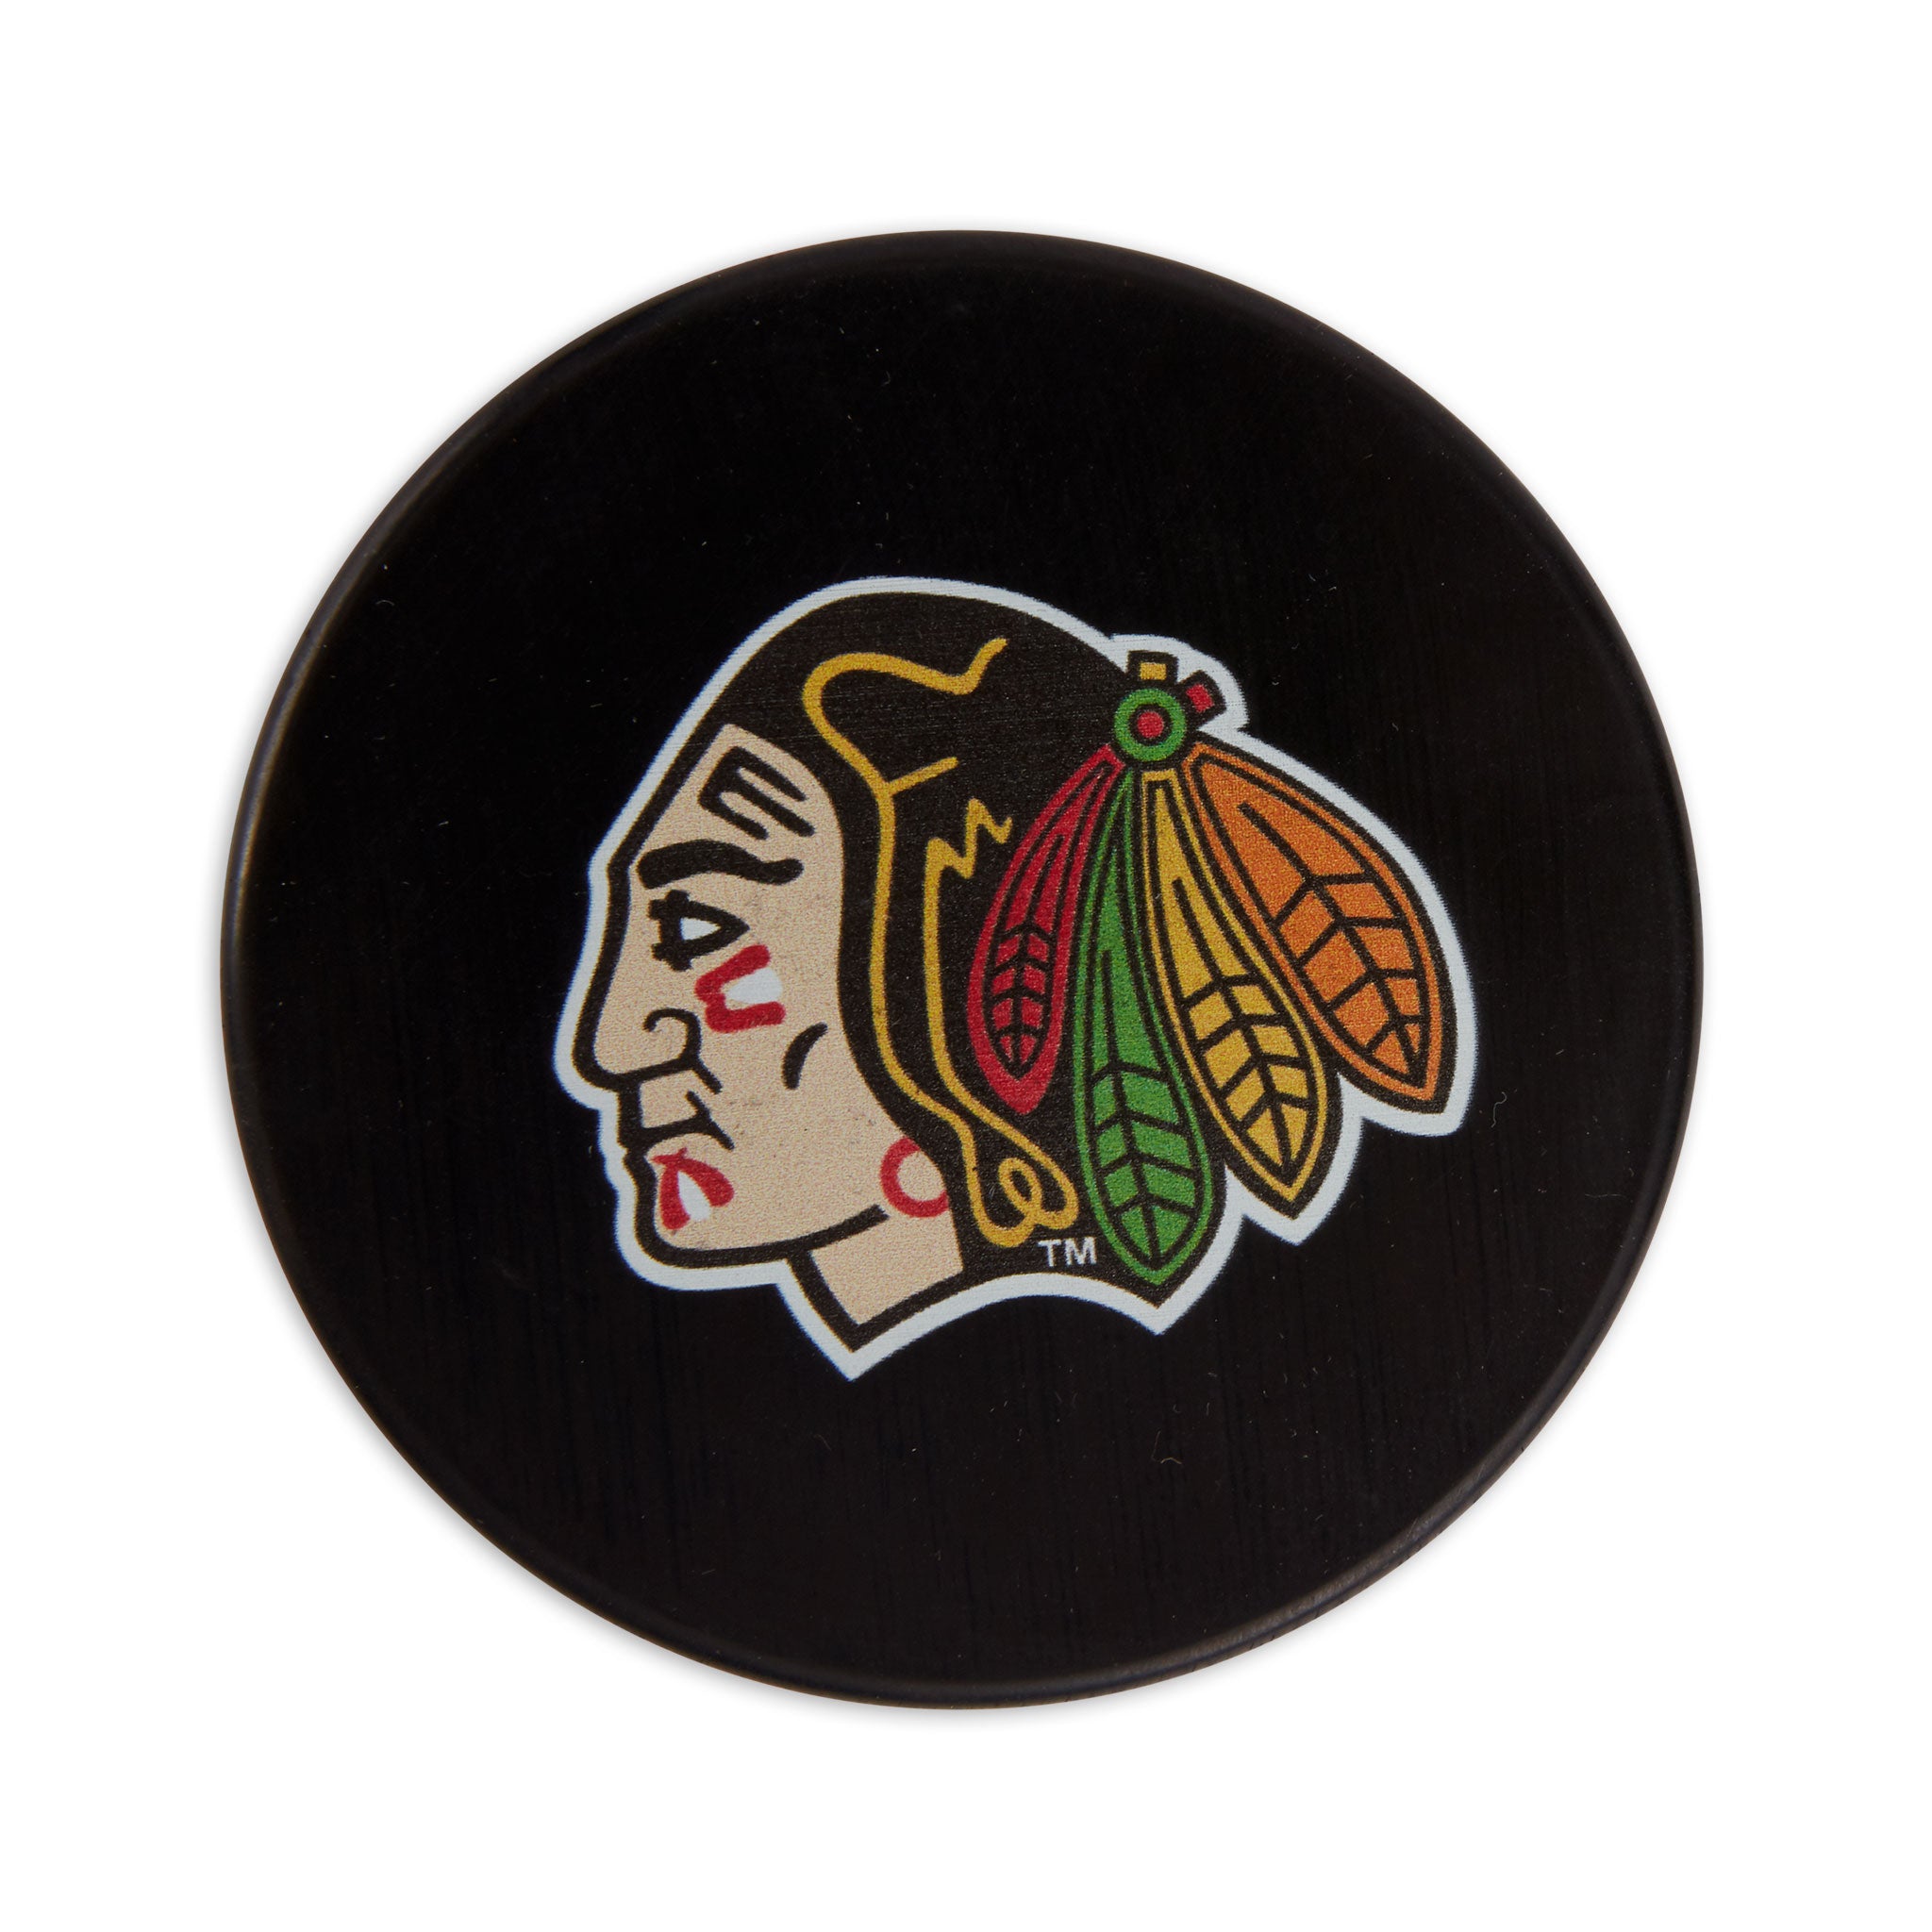 Portland Winterhawks In Minor League Hockey Fan Apparel & Souvenirs for  sale